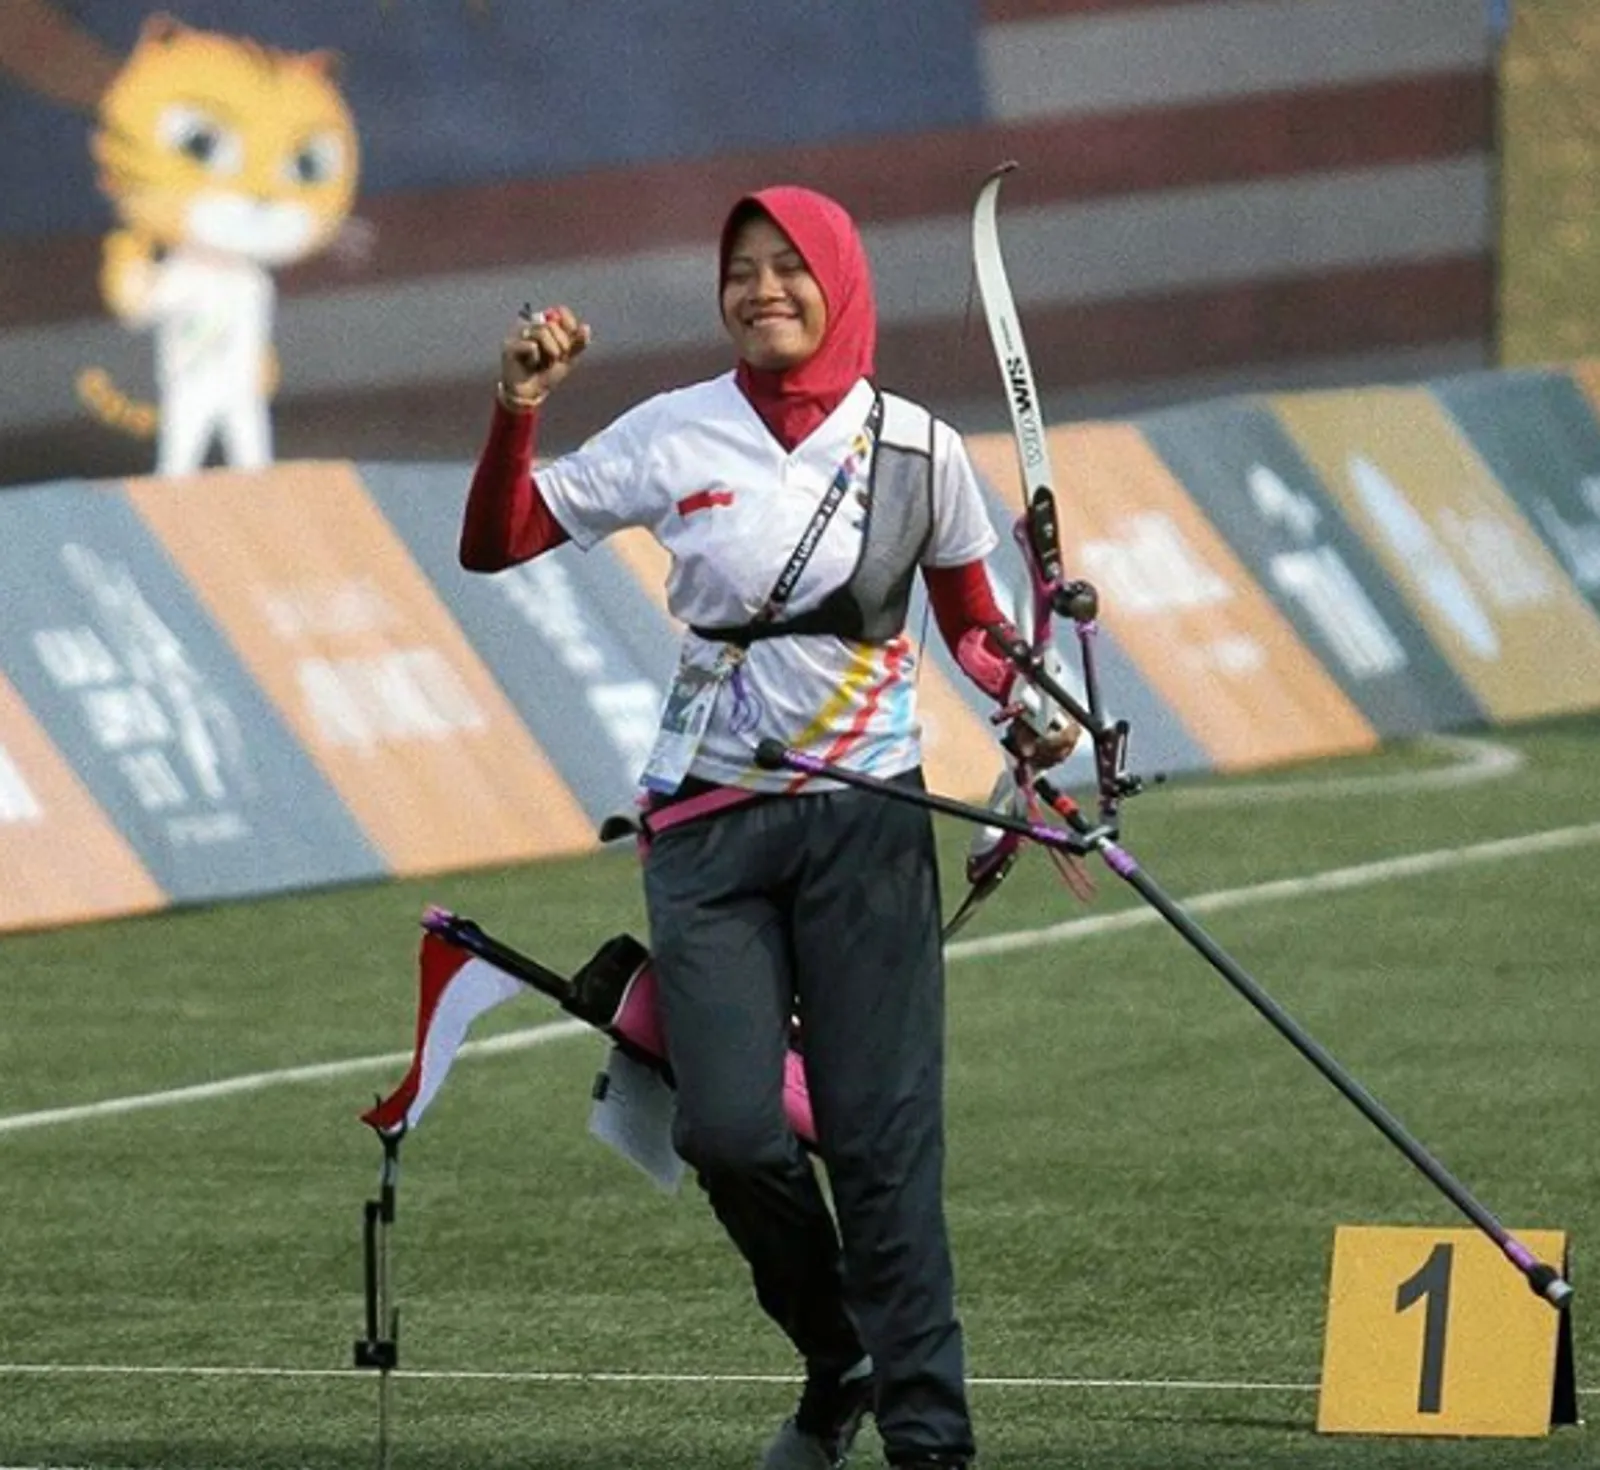 Daftar 10 Atlet Wakil Indonesia di Parade Pembukaan Olimpiade 2020